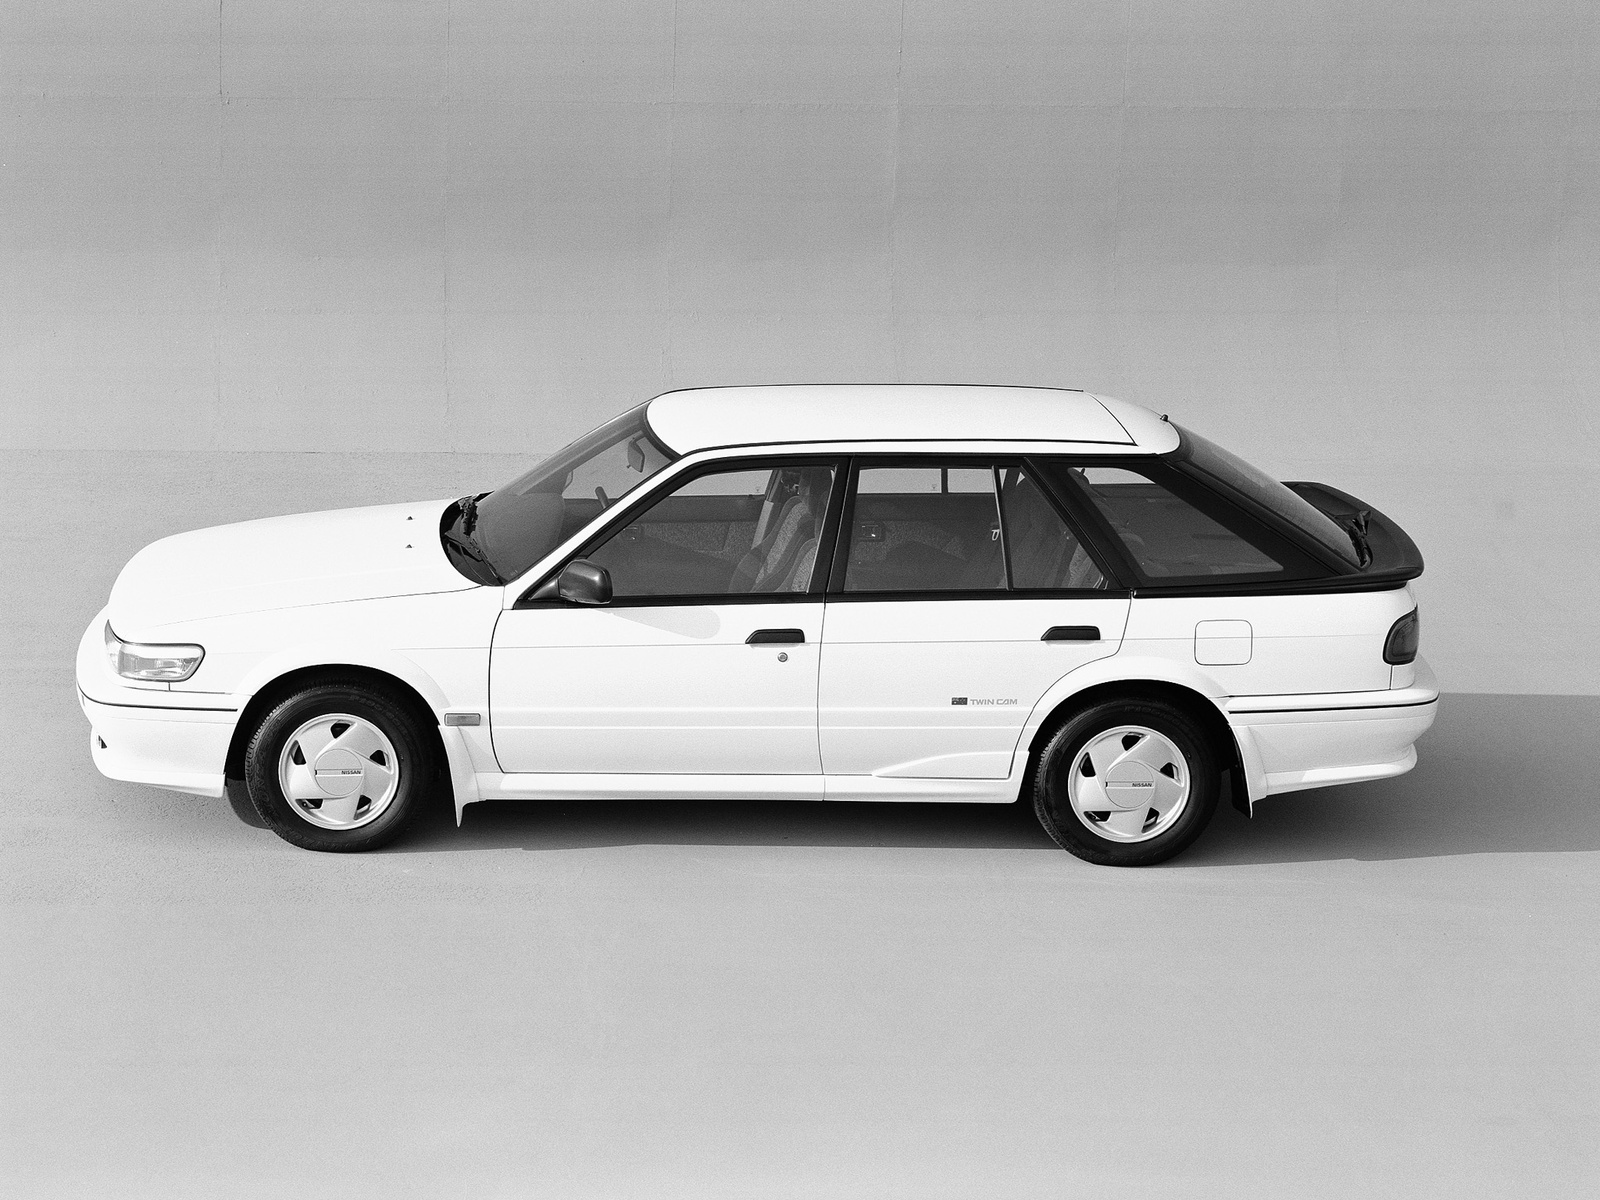 Nissan Bluebird Aussie (HAU12) '1991. Ð¥Ð°Ñ€Ð°ÐºÑ‚ÐµÑ€Ð¸ÑÑ‚Ð¸ÐºÐ¸ Ð¸Ð·Ð¾Ð±Ñ€Ð°Ð¶ÐµÐ½Ð¸Ñ: